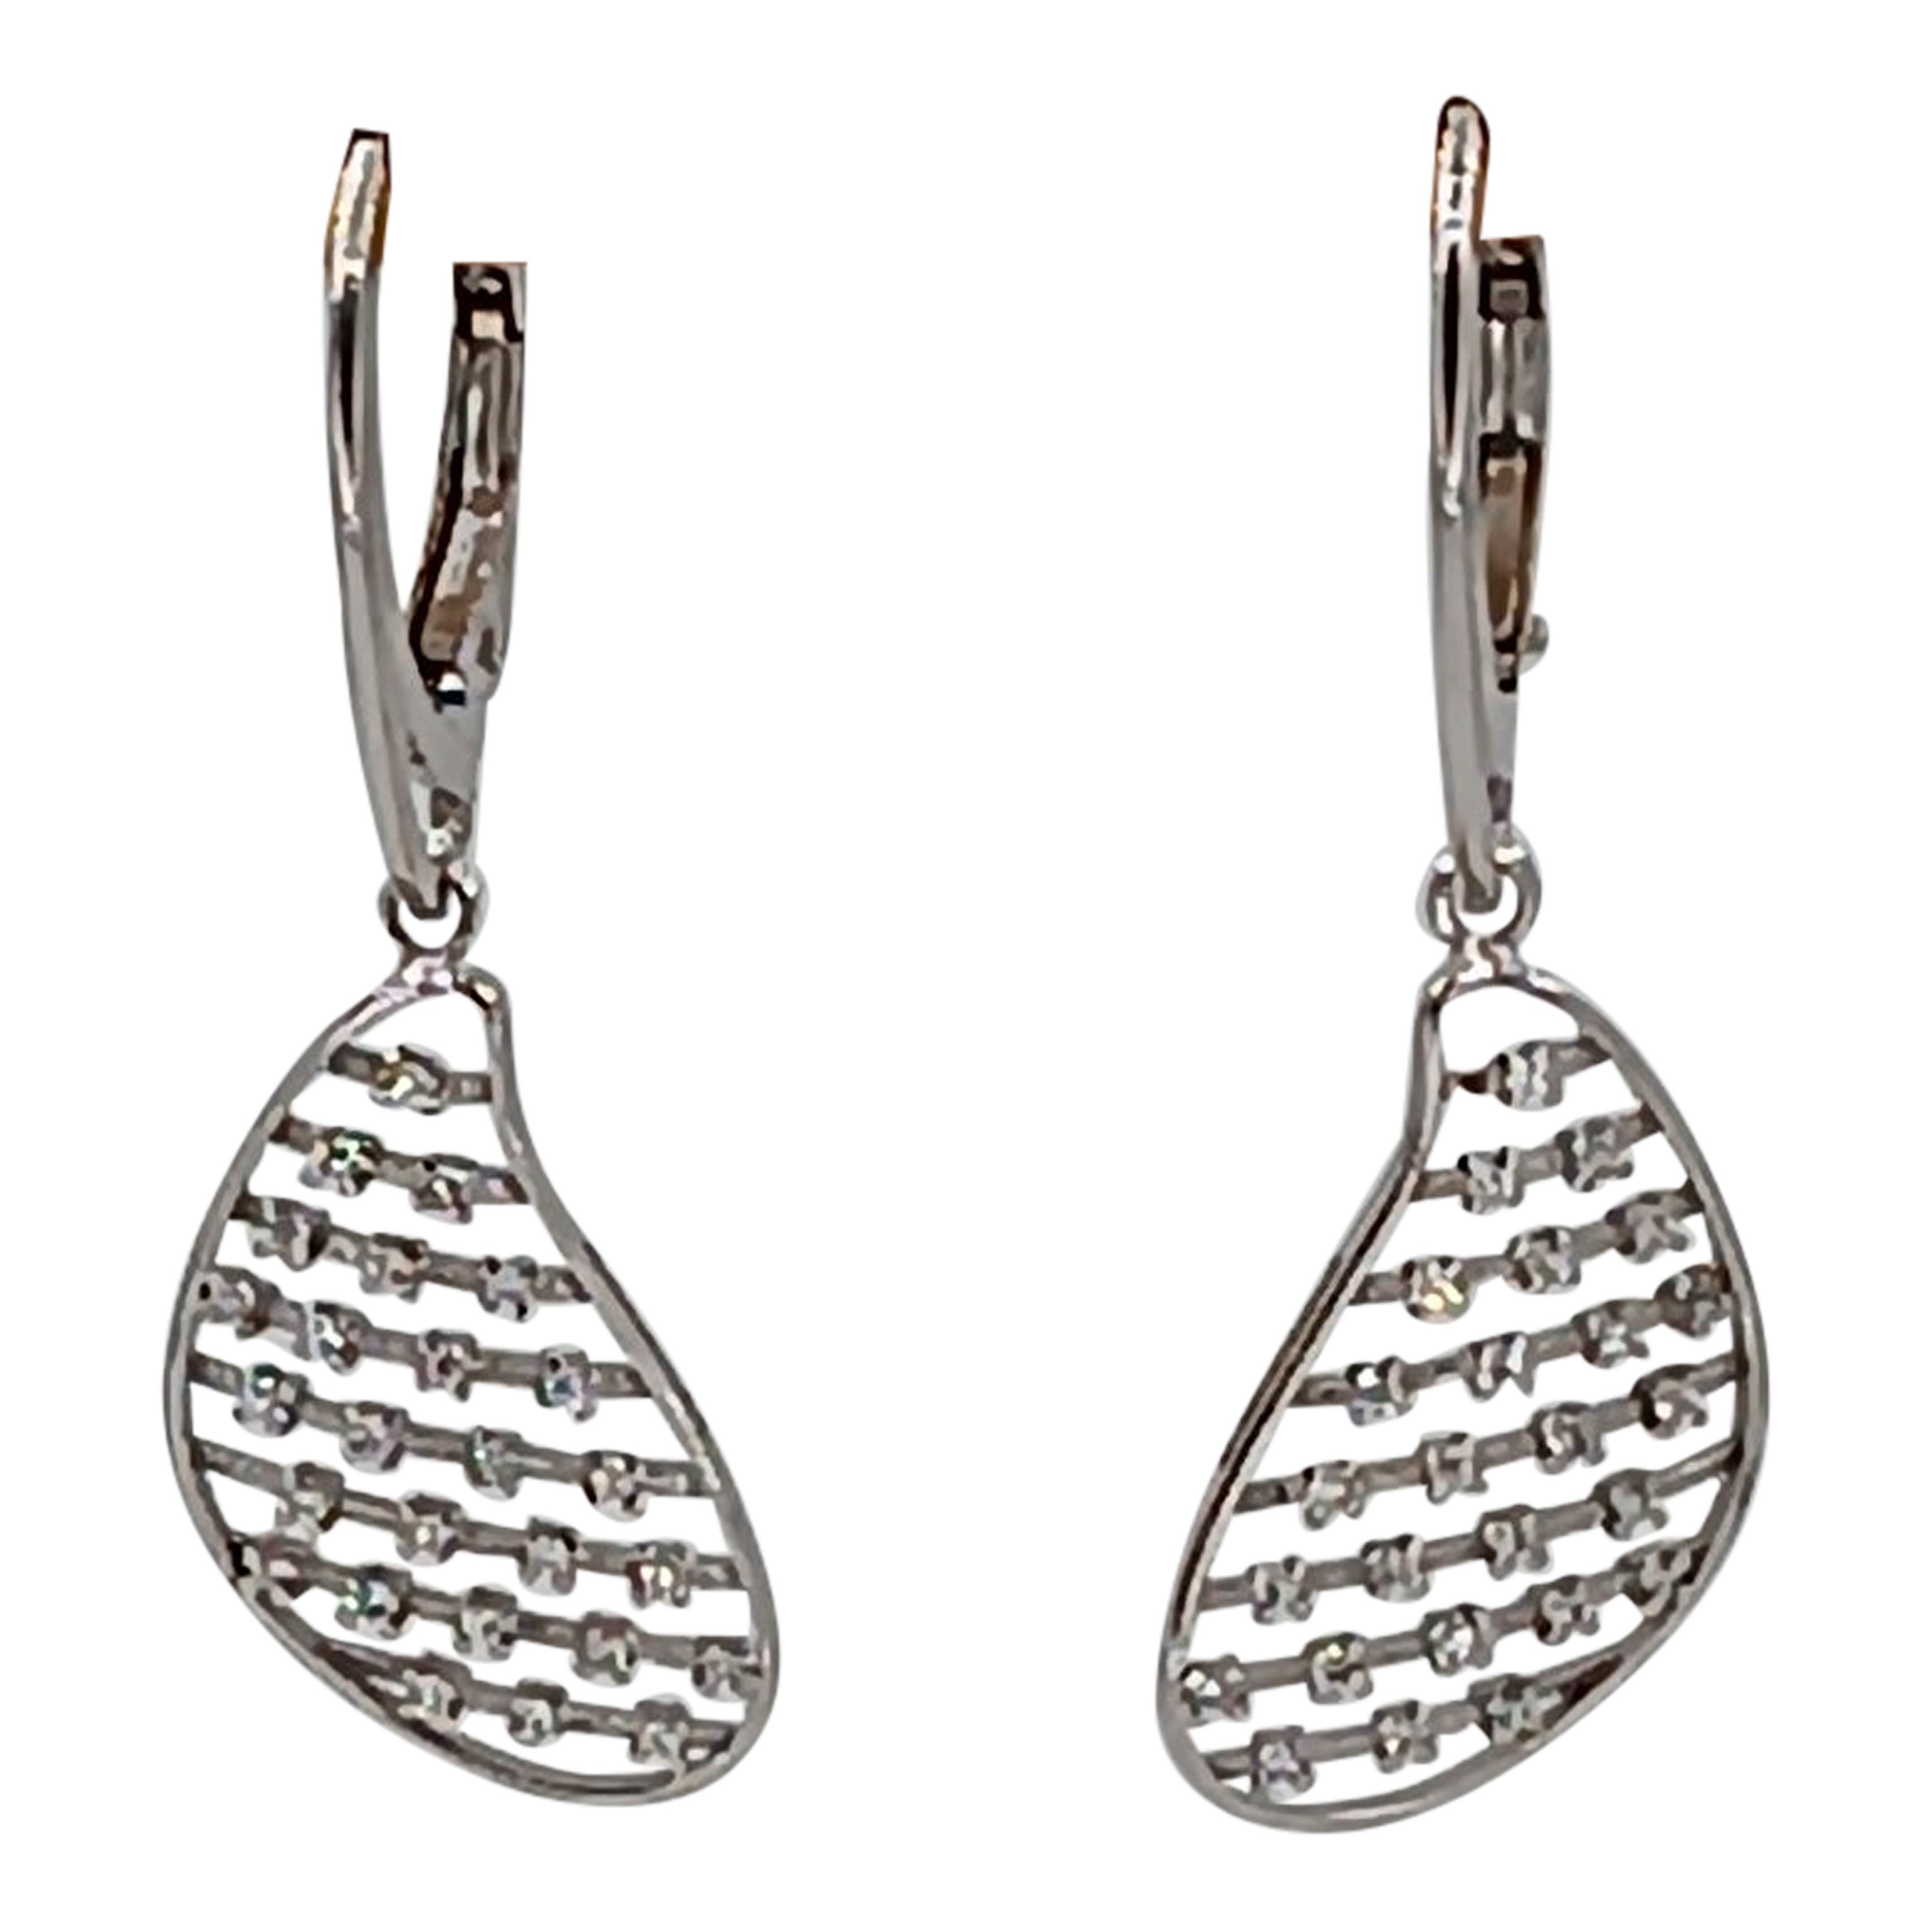 0.26 Carat Vs G Diamonds on 18 Carat White Gold Earrings For Sale